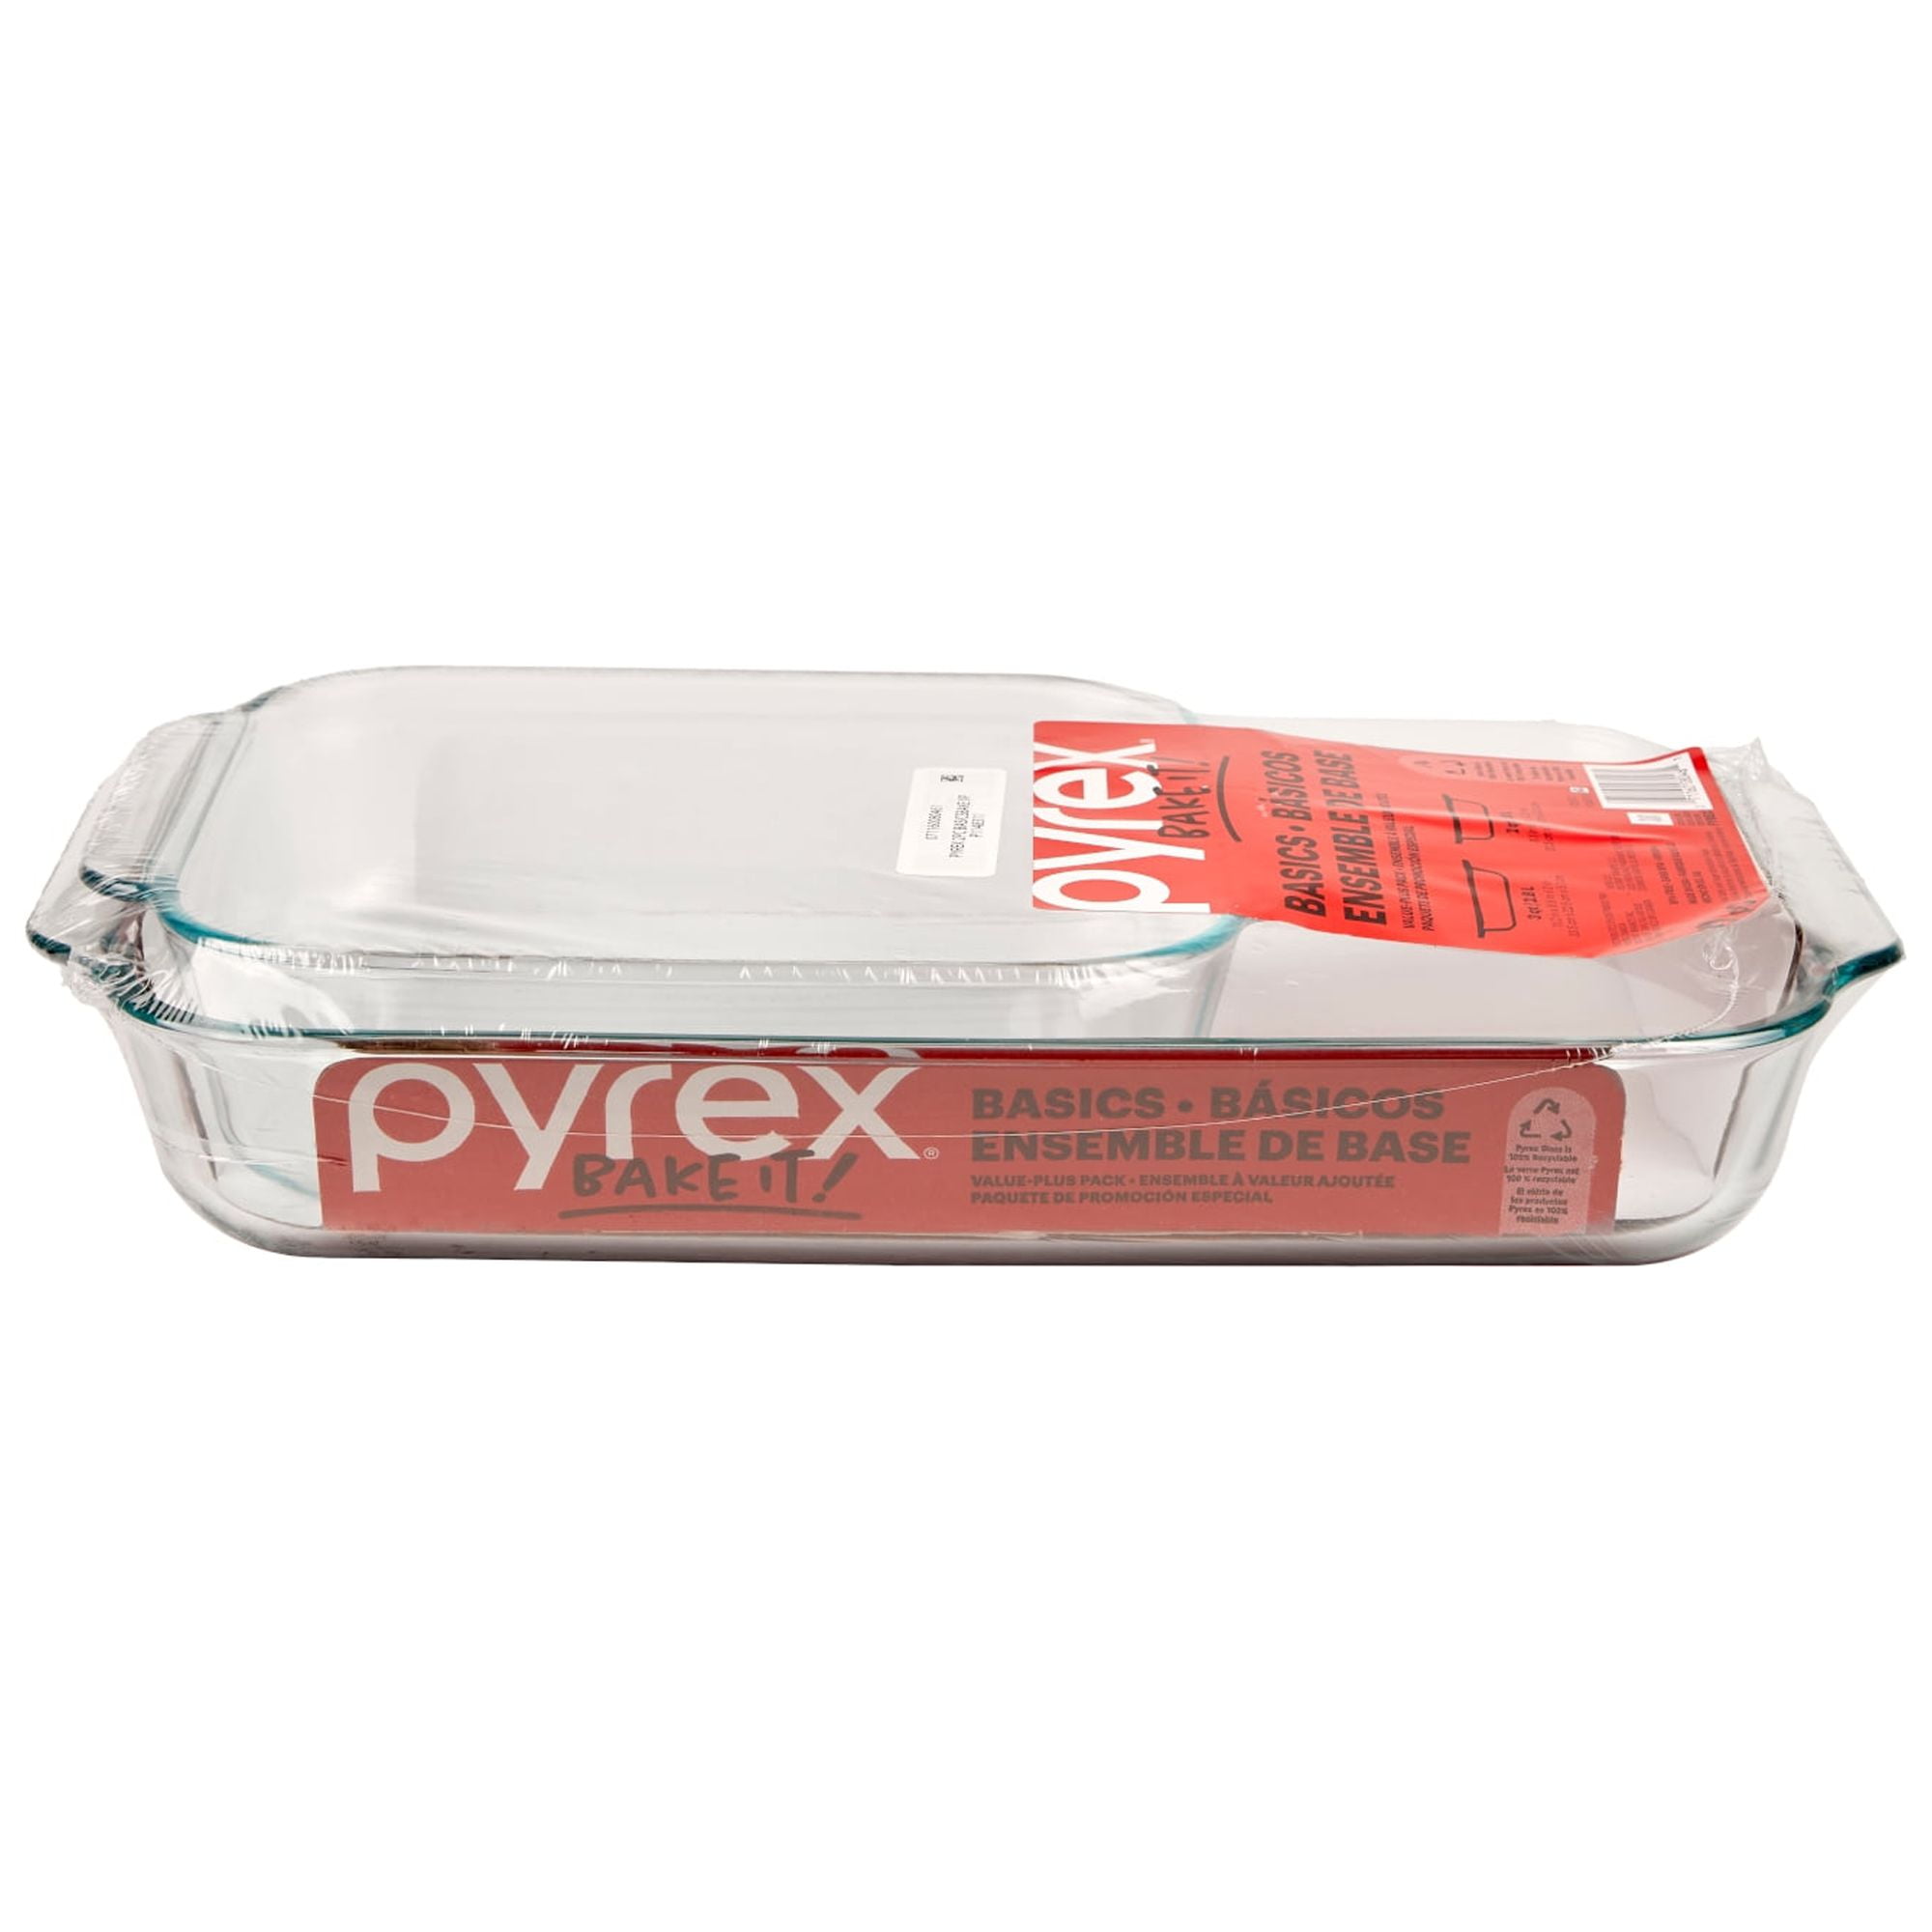 Pyrex Basics 8 Cuadrado con tapa roja (2 PACK)